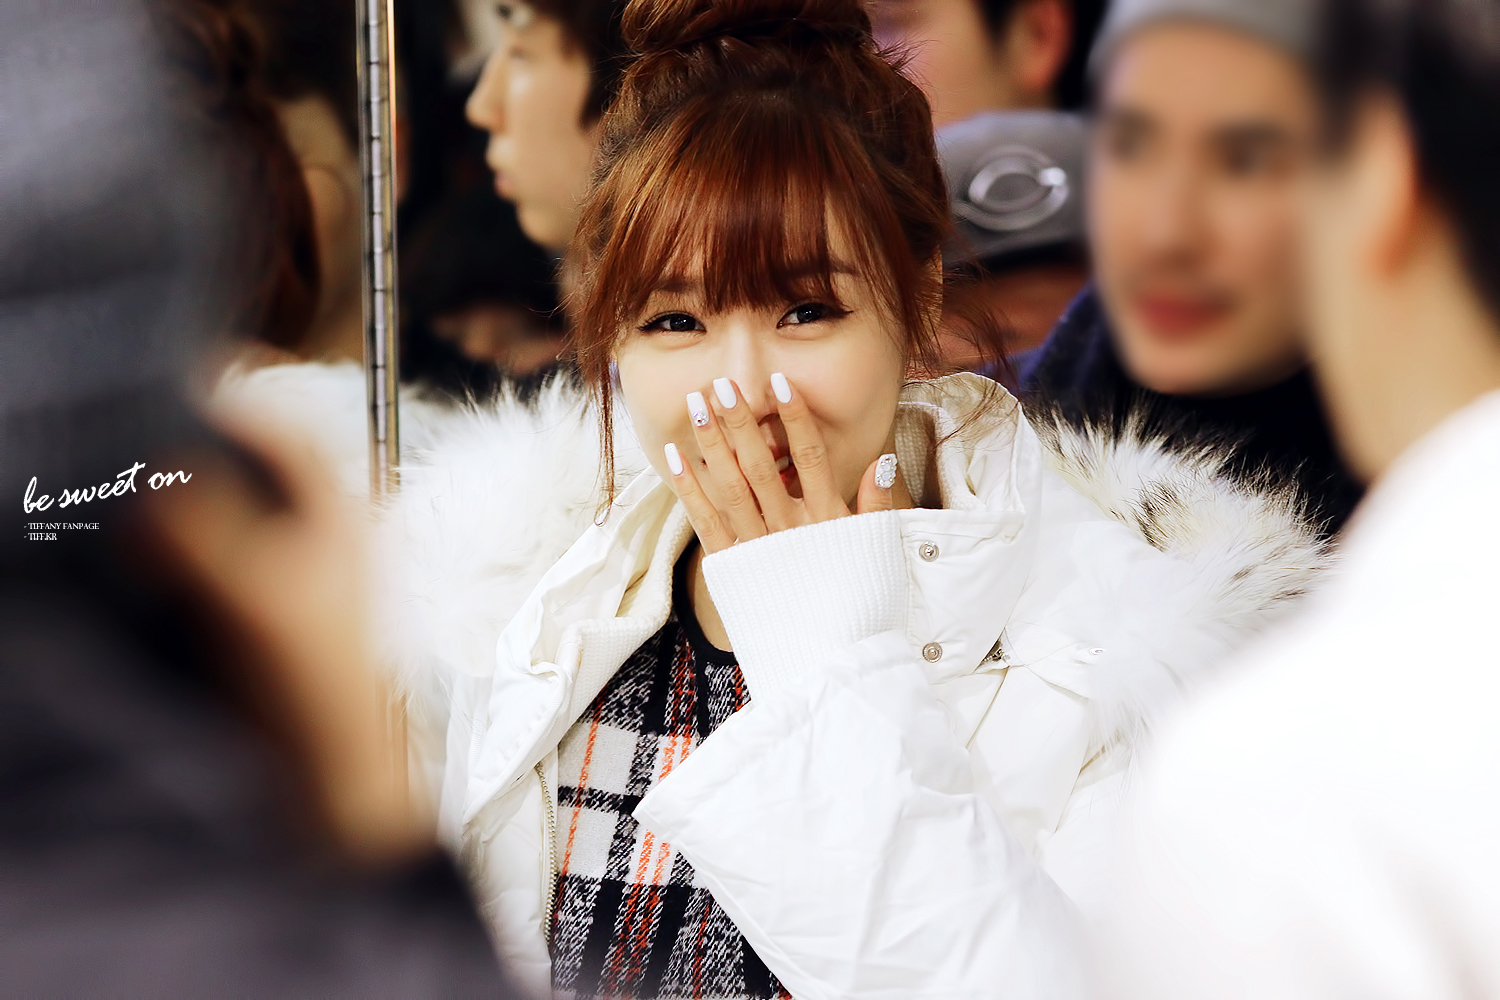 [PIC][28-11-2013]Tiffany ghé thăm cửa hàng "QUA" ở Hyundai Department Store vào trưa nay - Page 3 2210F746529C93C31C8A7E